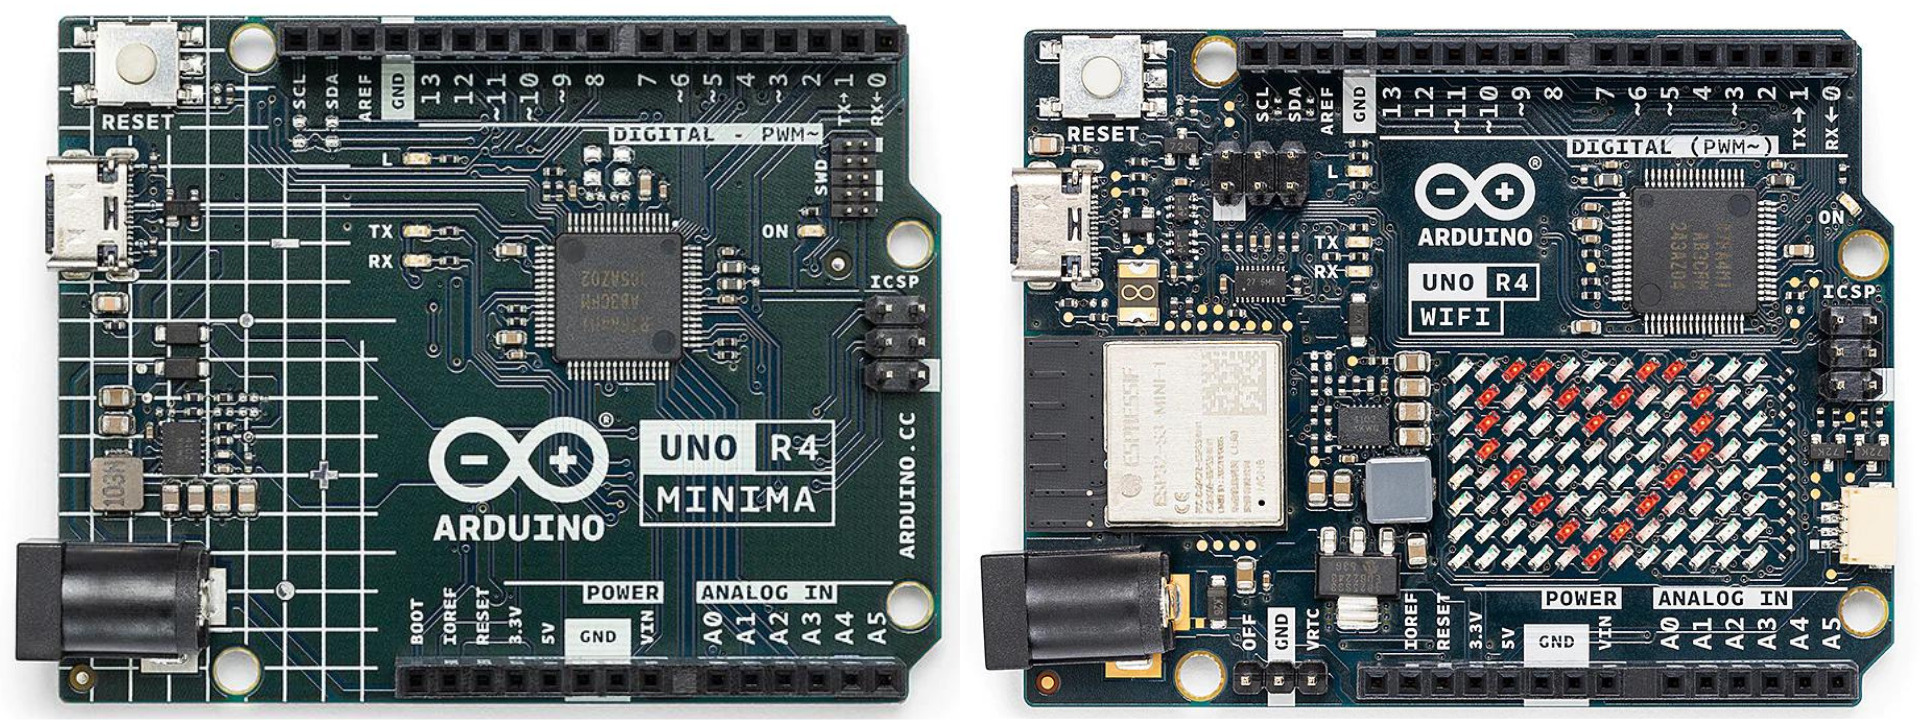 Arduino Uno R4 Minima and R4 Wi-Fi